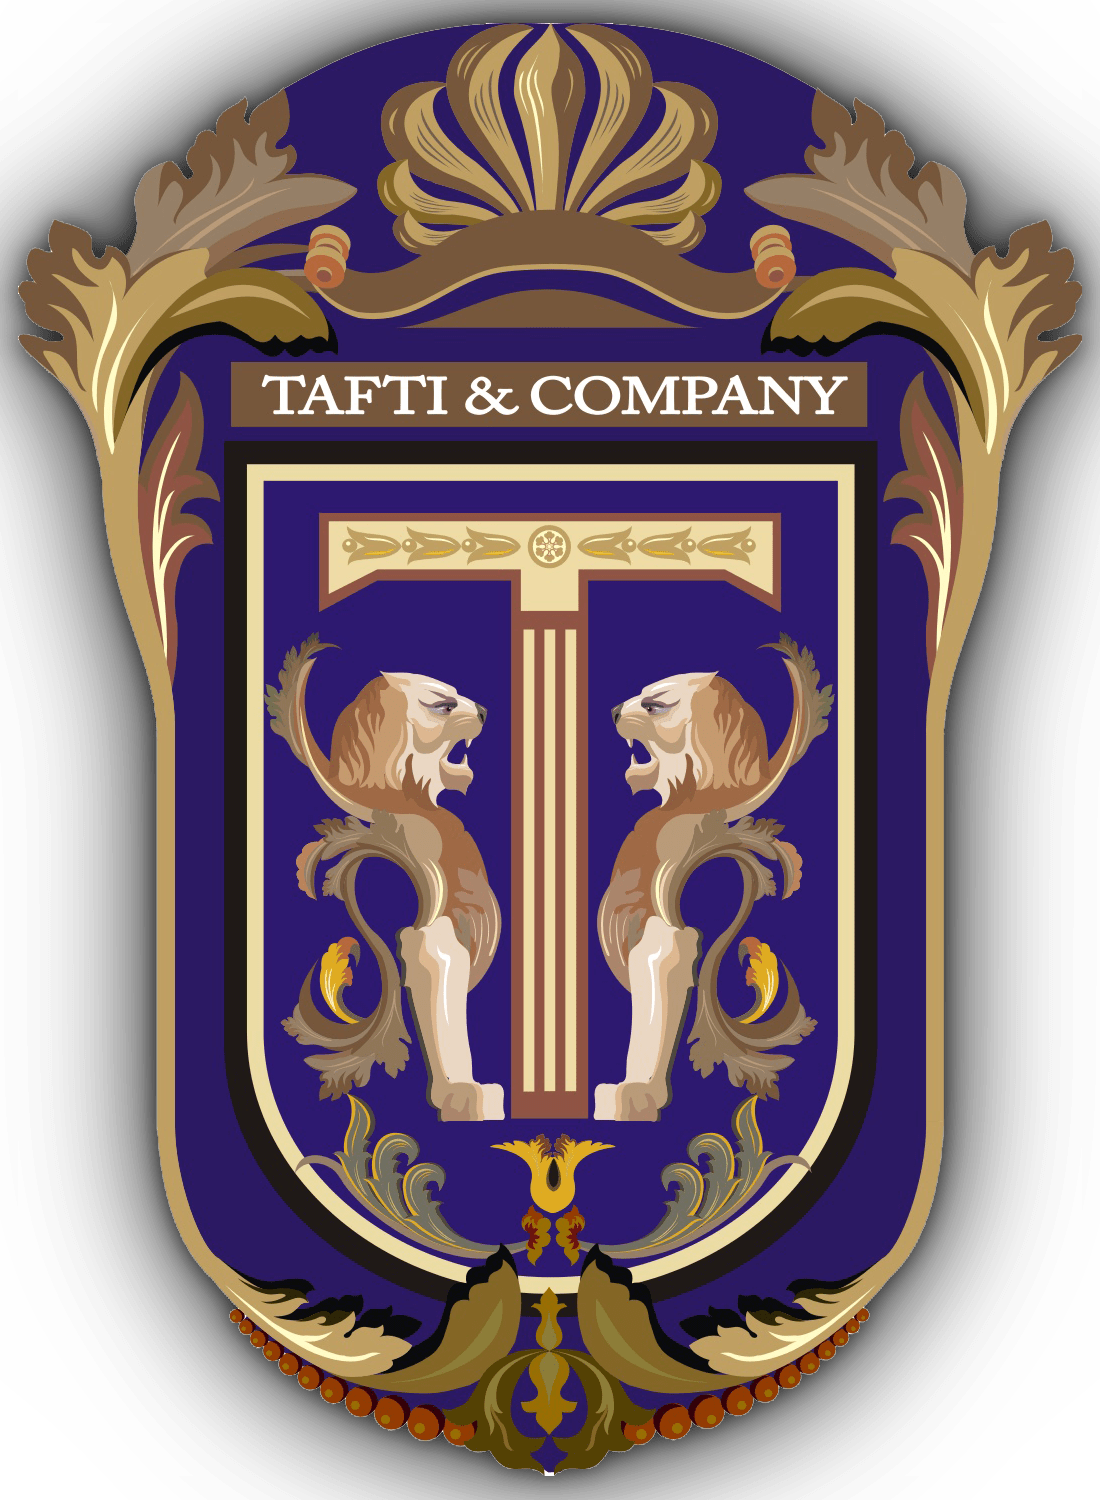 Tafti & Company